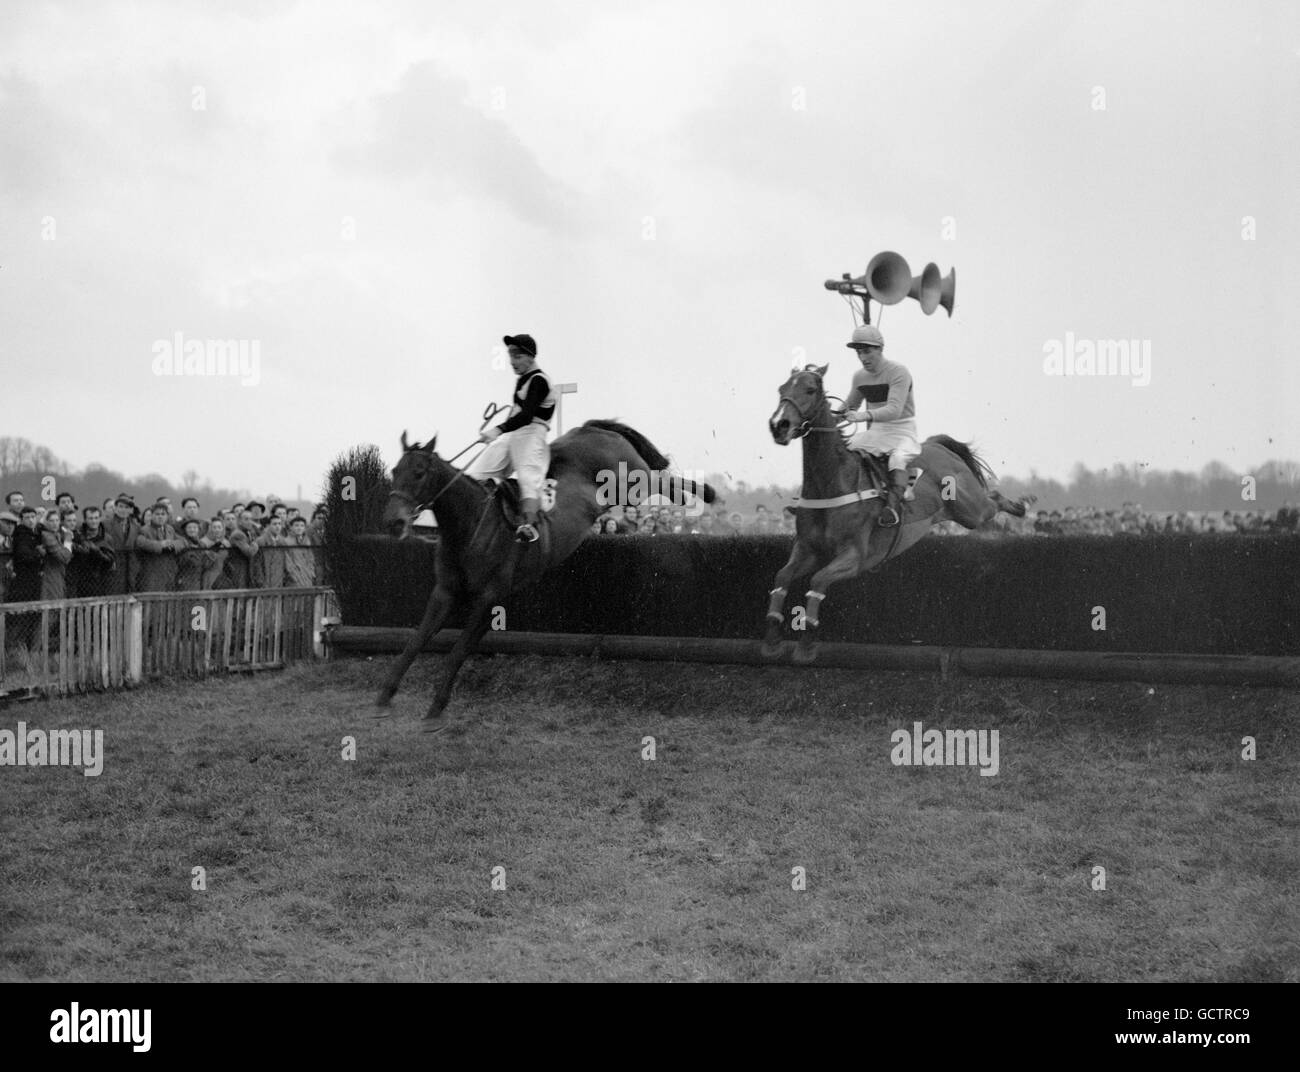 Mandarin, con Gerry Madden arriba (derecha), tomando la última valla para ganar en un final cercano de Pointsman (izquierda) en el King George VI Steeple Chase en Kempton Park Foto de stock